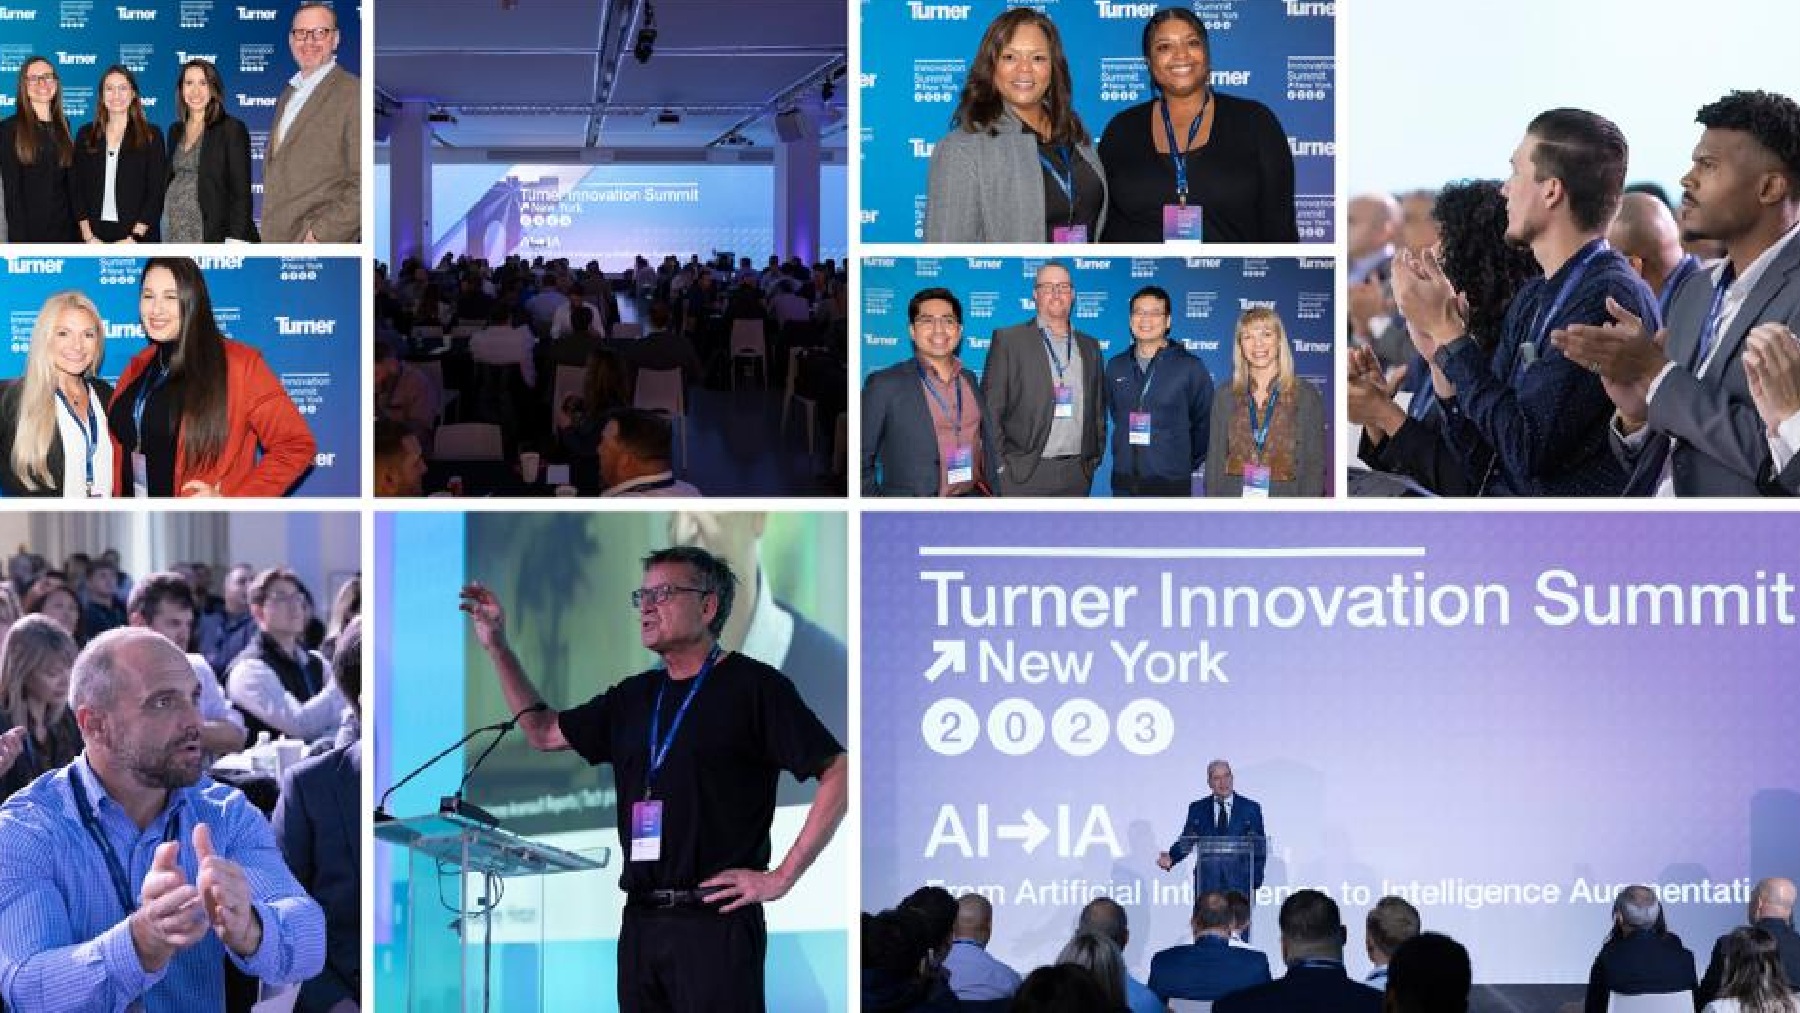 Turner Innovation Summit